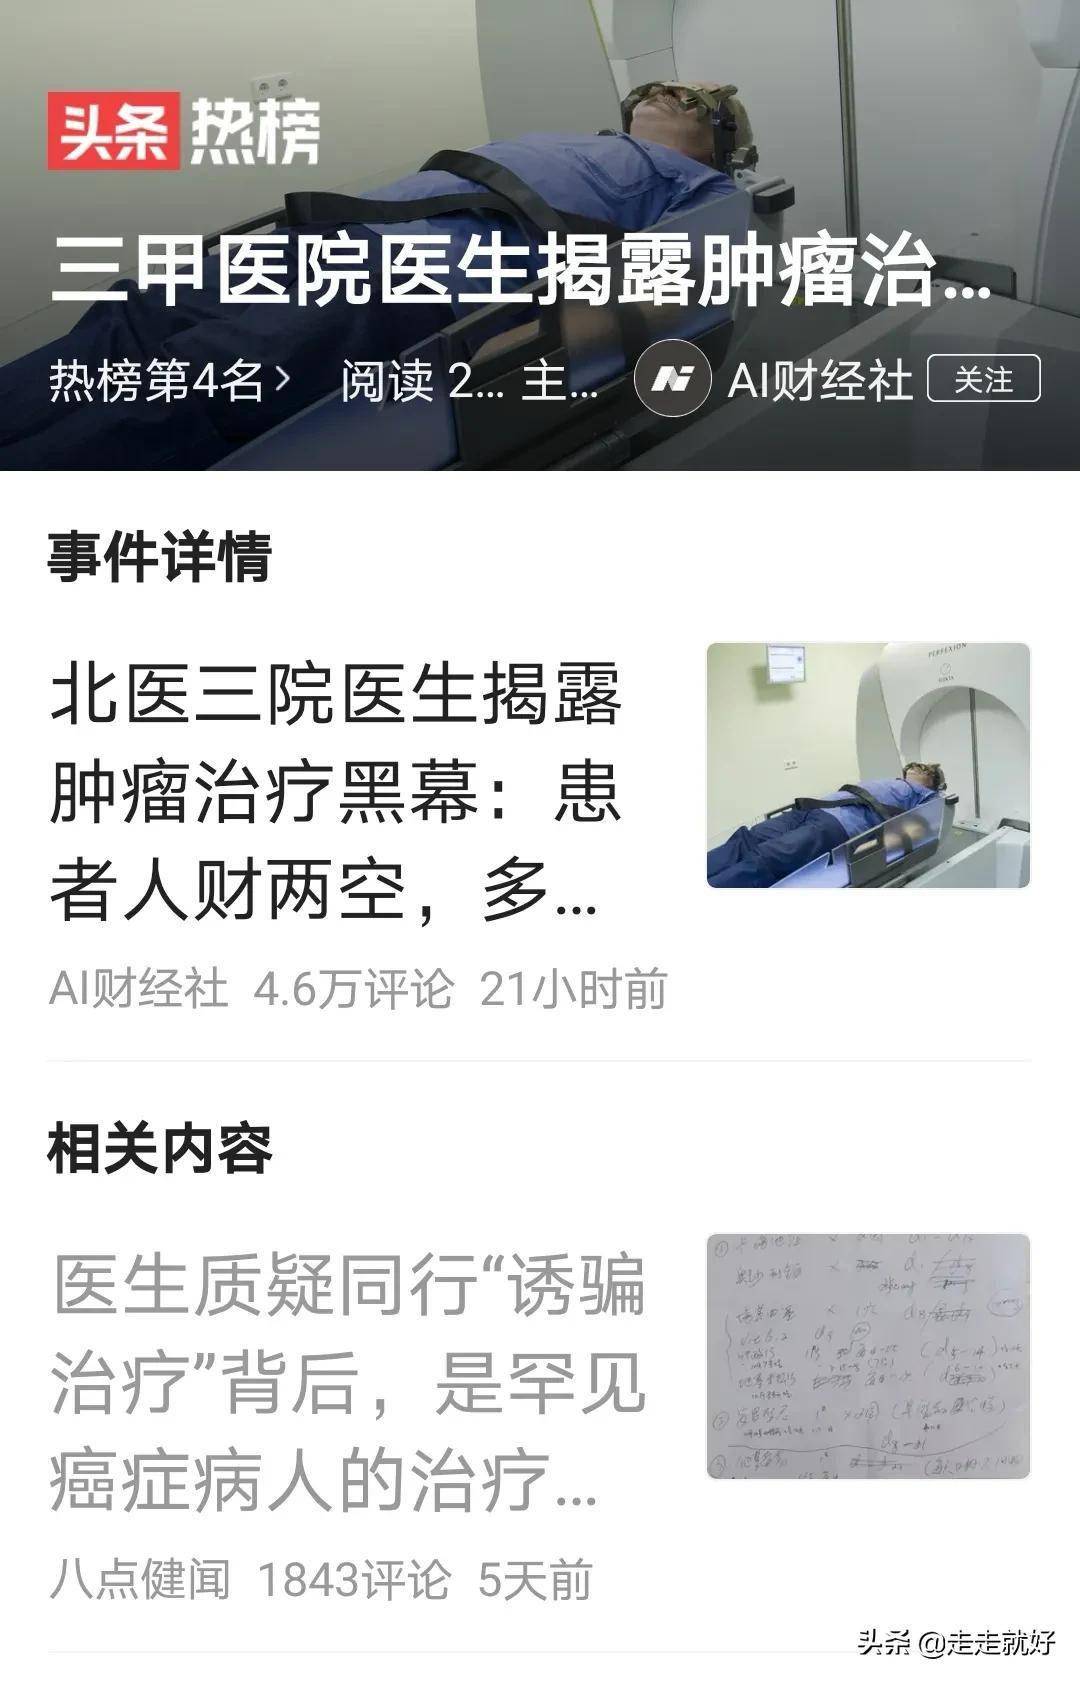 北京大学第三医院张煜医生成热搜,文章爆棚,原因找到了